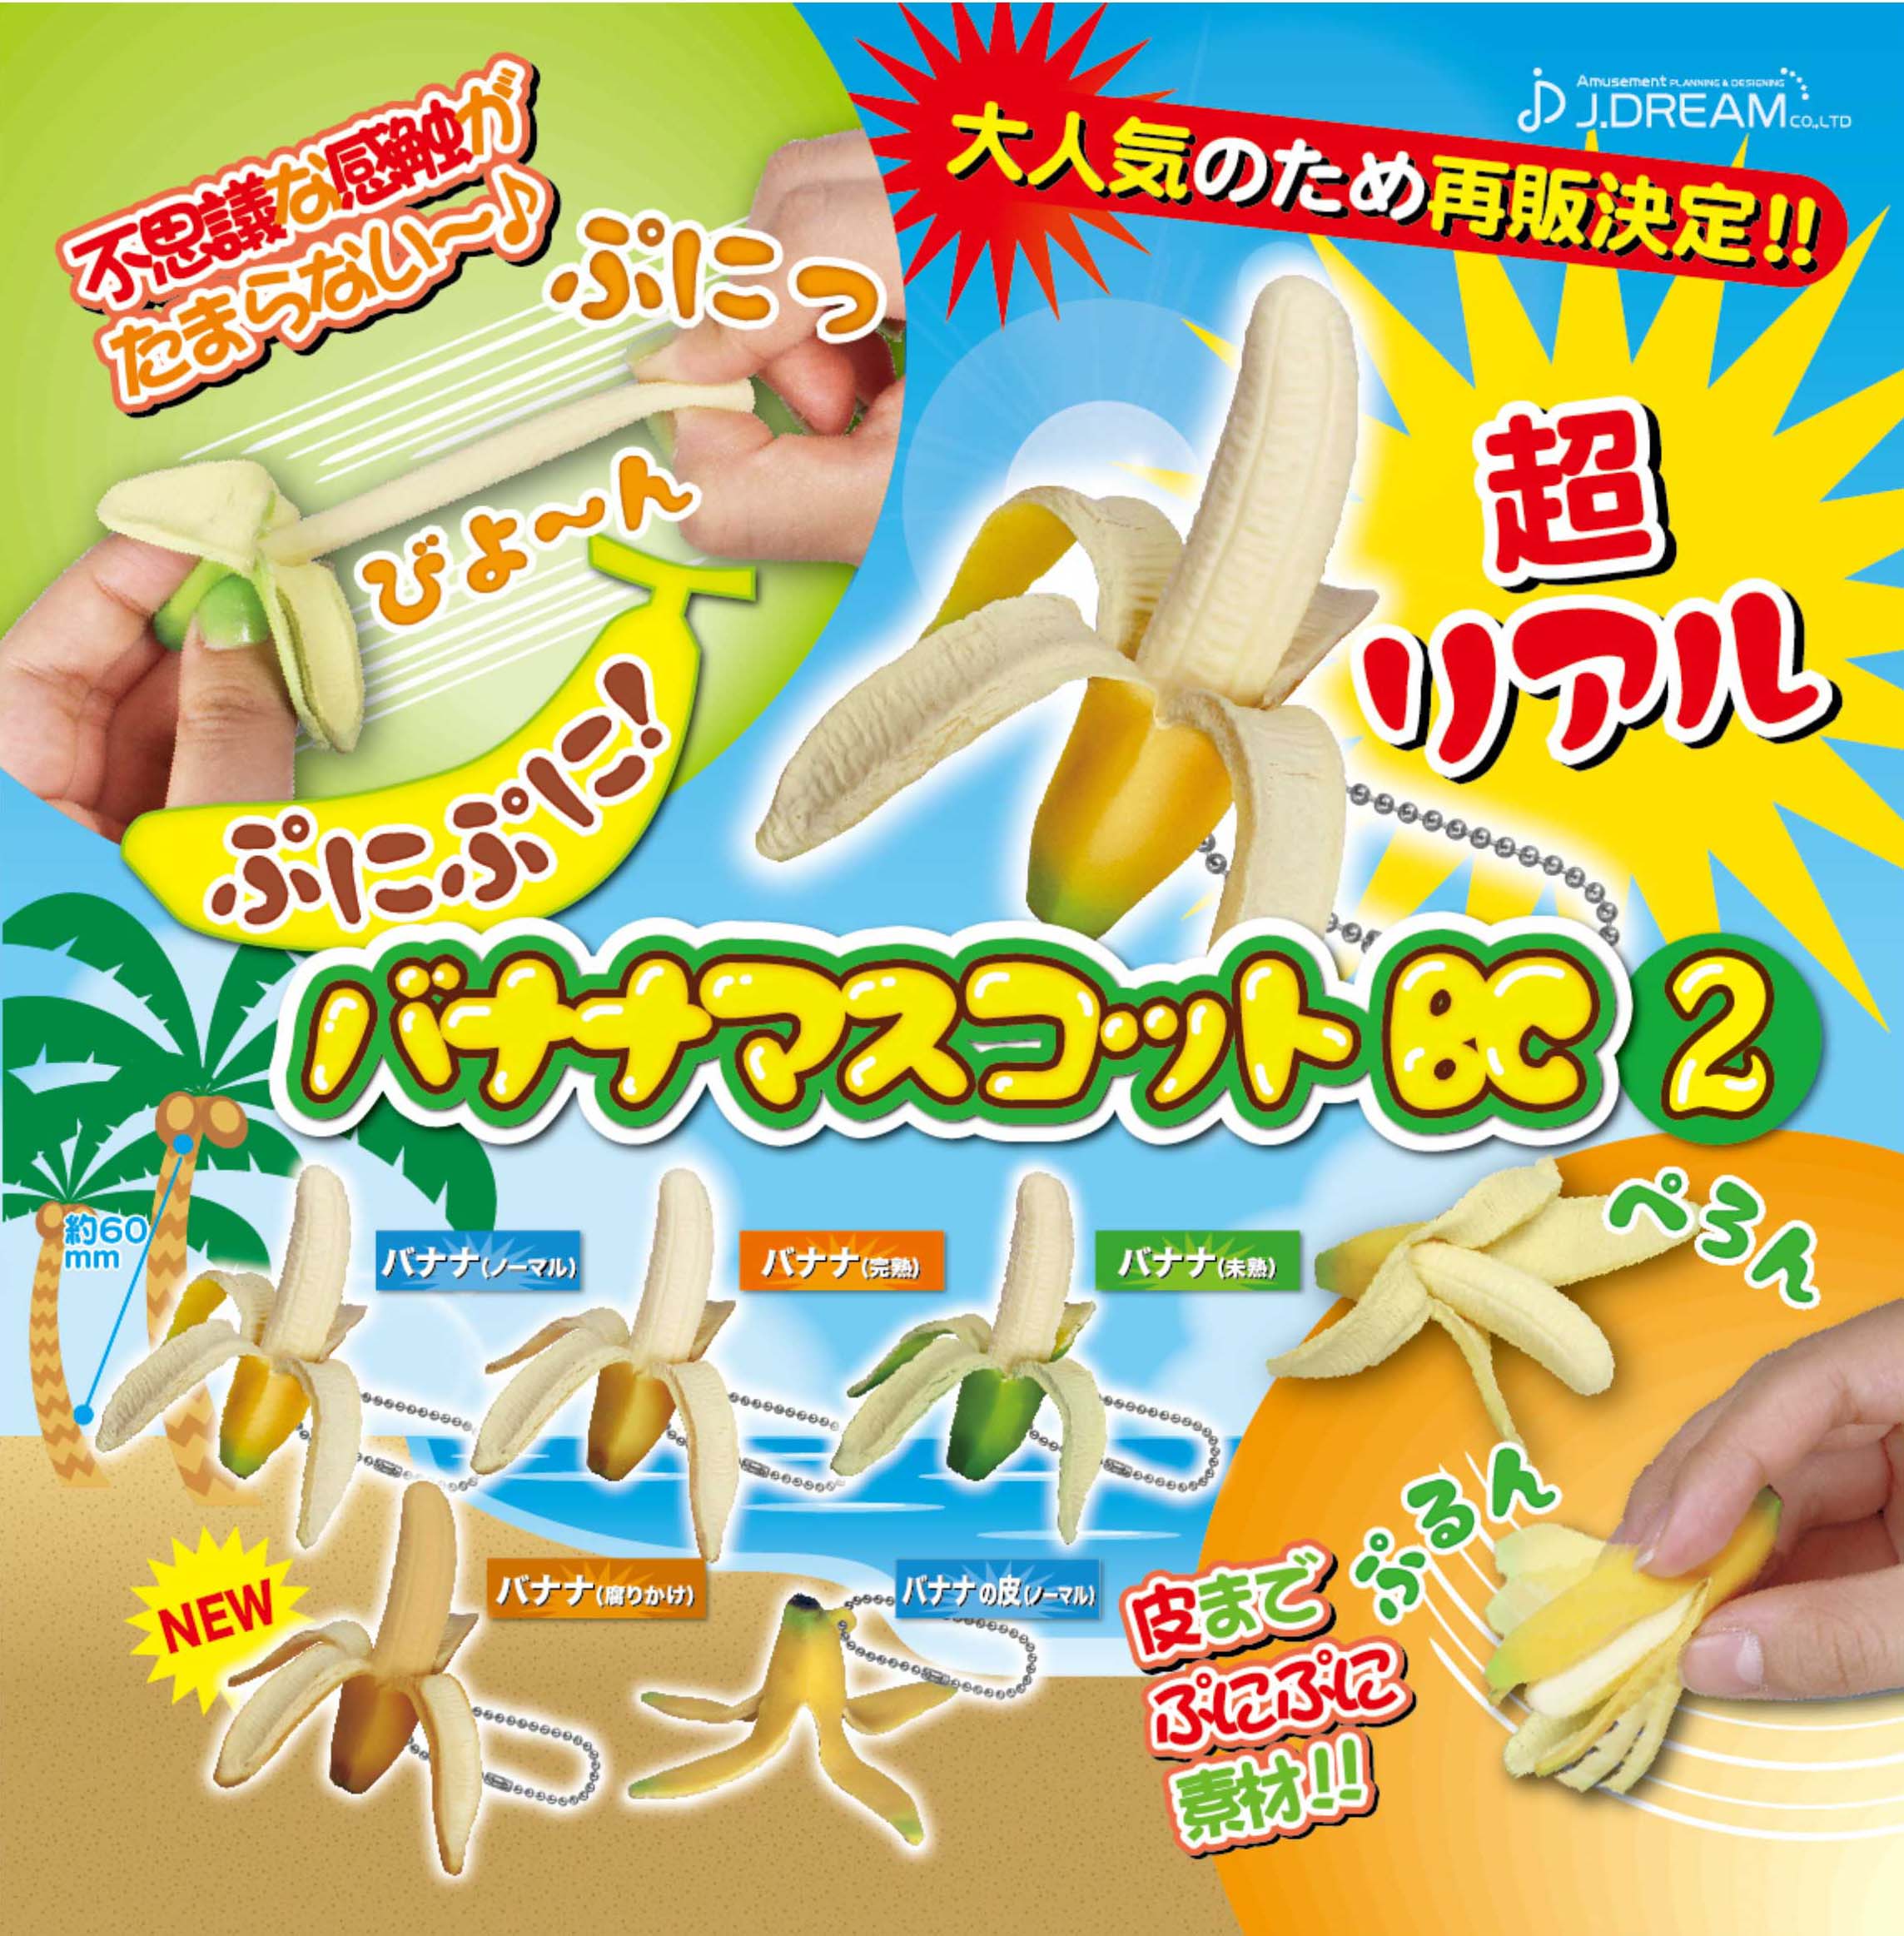 300日元扭蛋 再版仿真香蕉 挂件 全5种  851199